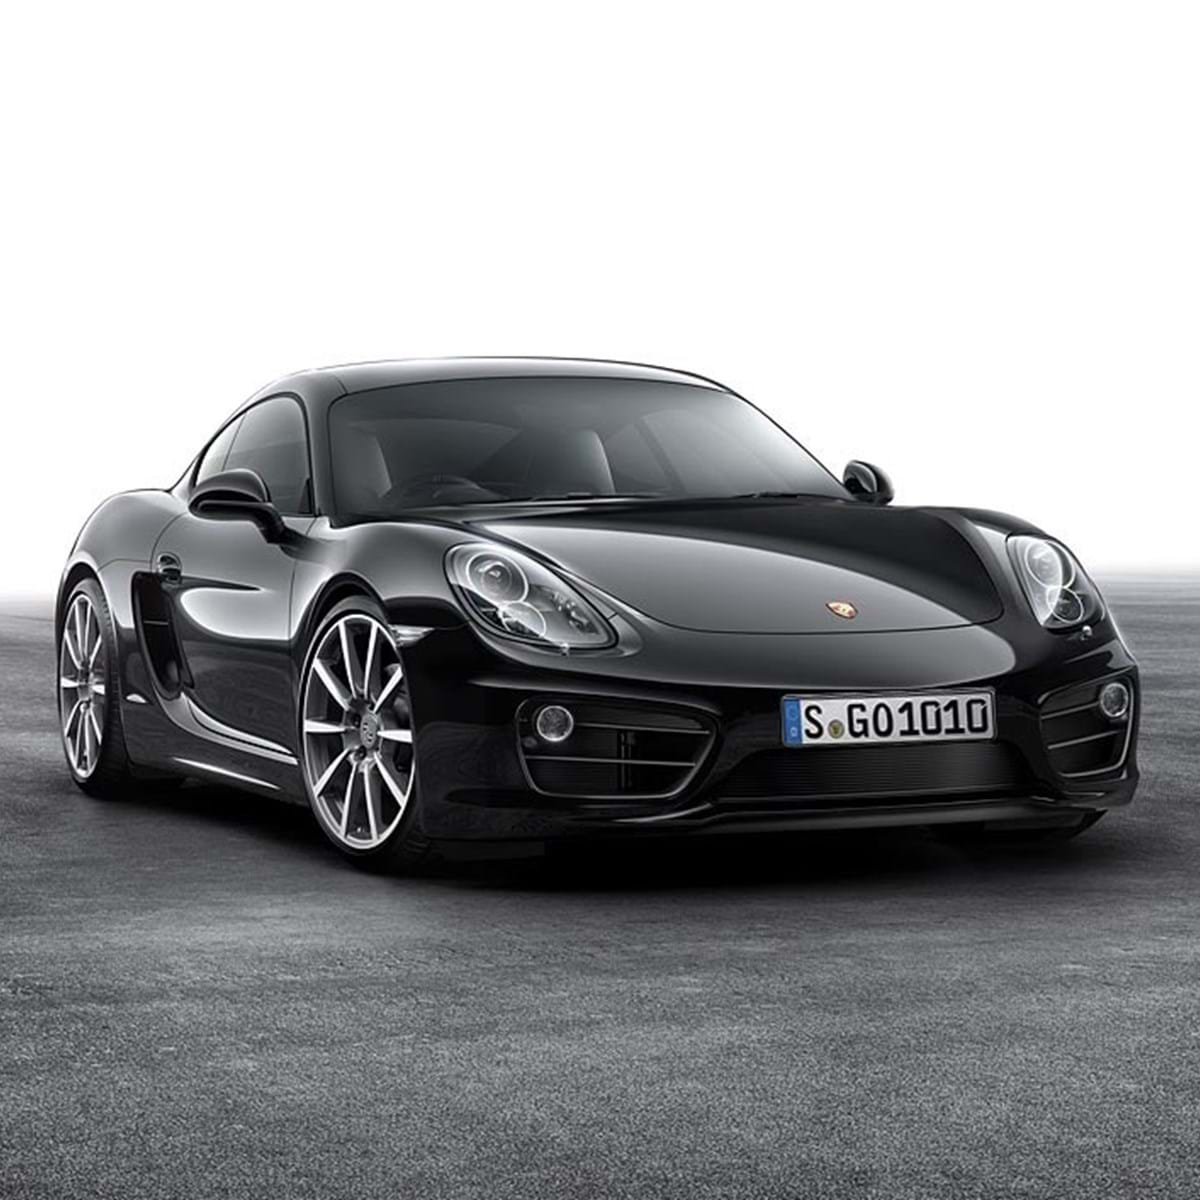 Nunca se compraram tantos Porsche em Portugal. Quais são os